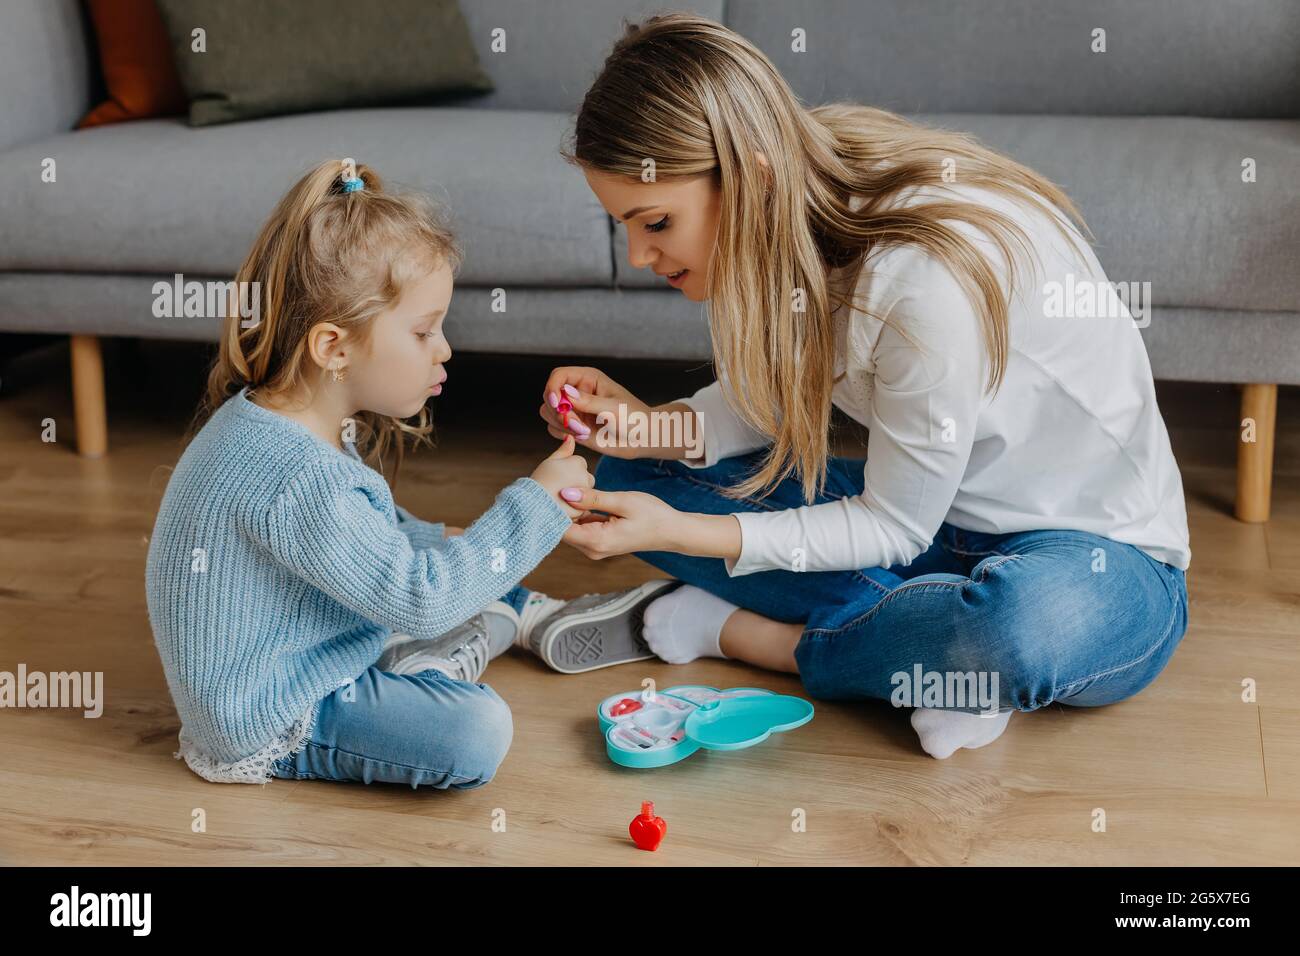 Mutter und kleine Tochter malen ihre Nägel mit Spielzeug-Nagellack. Kind spielt mit Mutter zu Hause. Konzept der guten Elternschaft und glückliche Kindheit, Familie Stockfoto